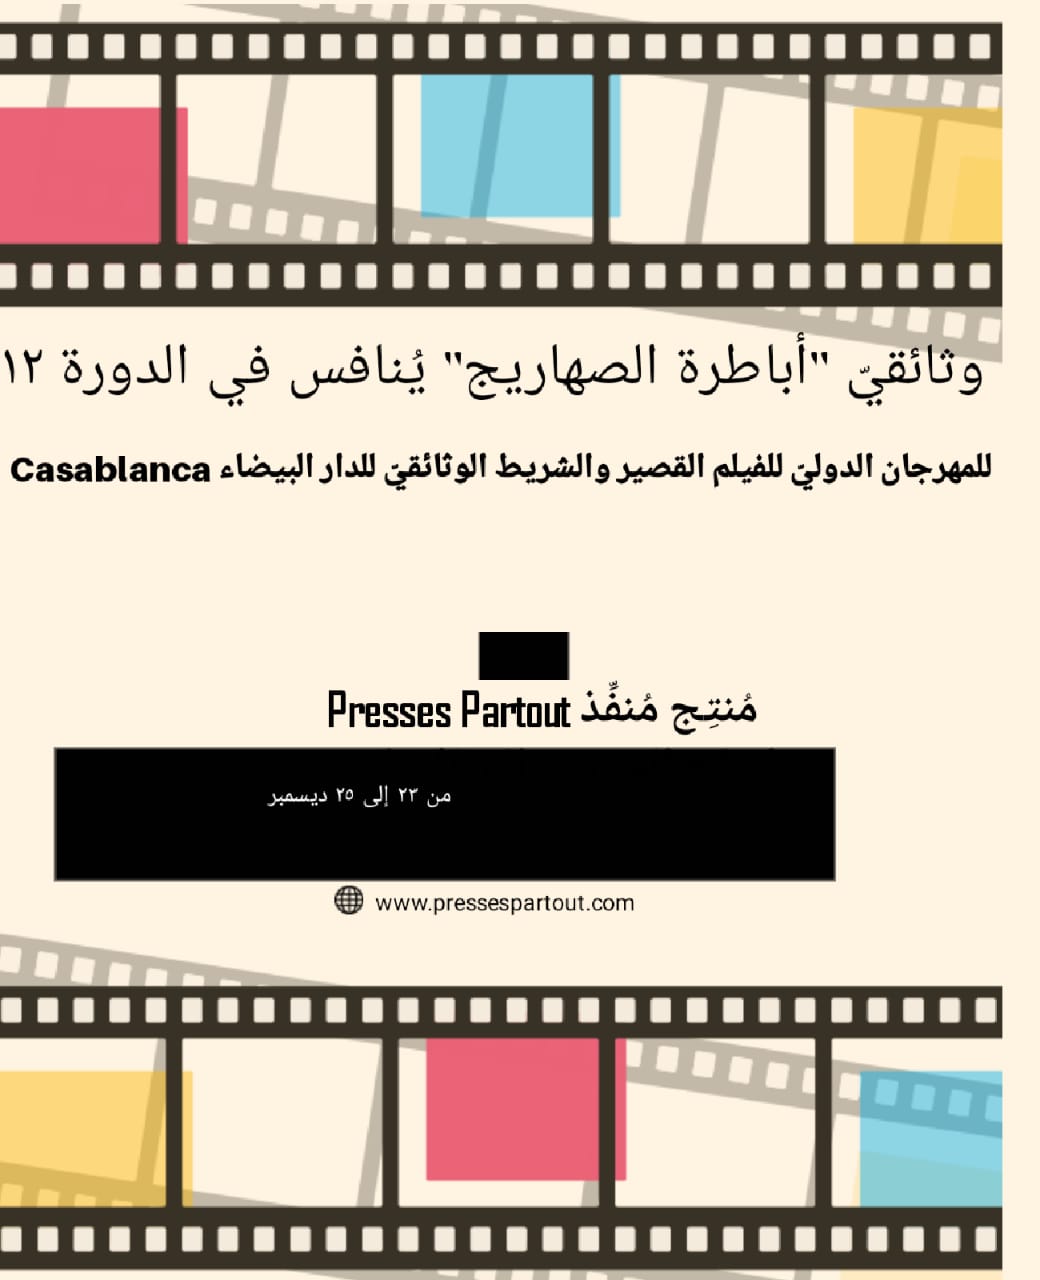 وثائقيّ أباطرة الصهاريج يُنافس في "المهرجان الدوليّ للفيلم القصير والشريط الوثائقيّ للدار البيضاء Casablanca"